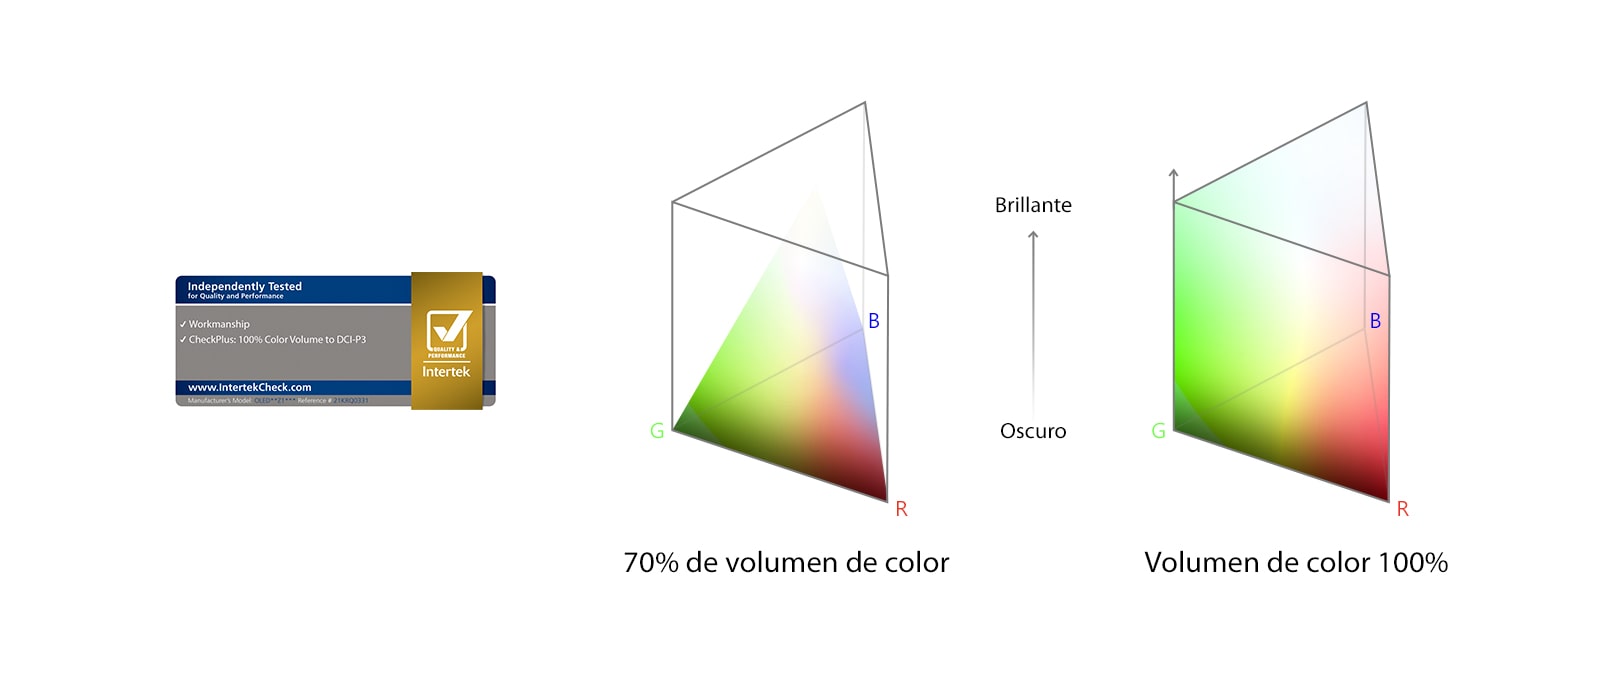 Un logo de 100% Color Volume certificado por Intertek. Un gráfico de comparación entre el 70% del volumen de color y el 100% del volumen de color.